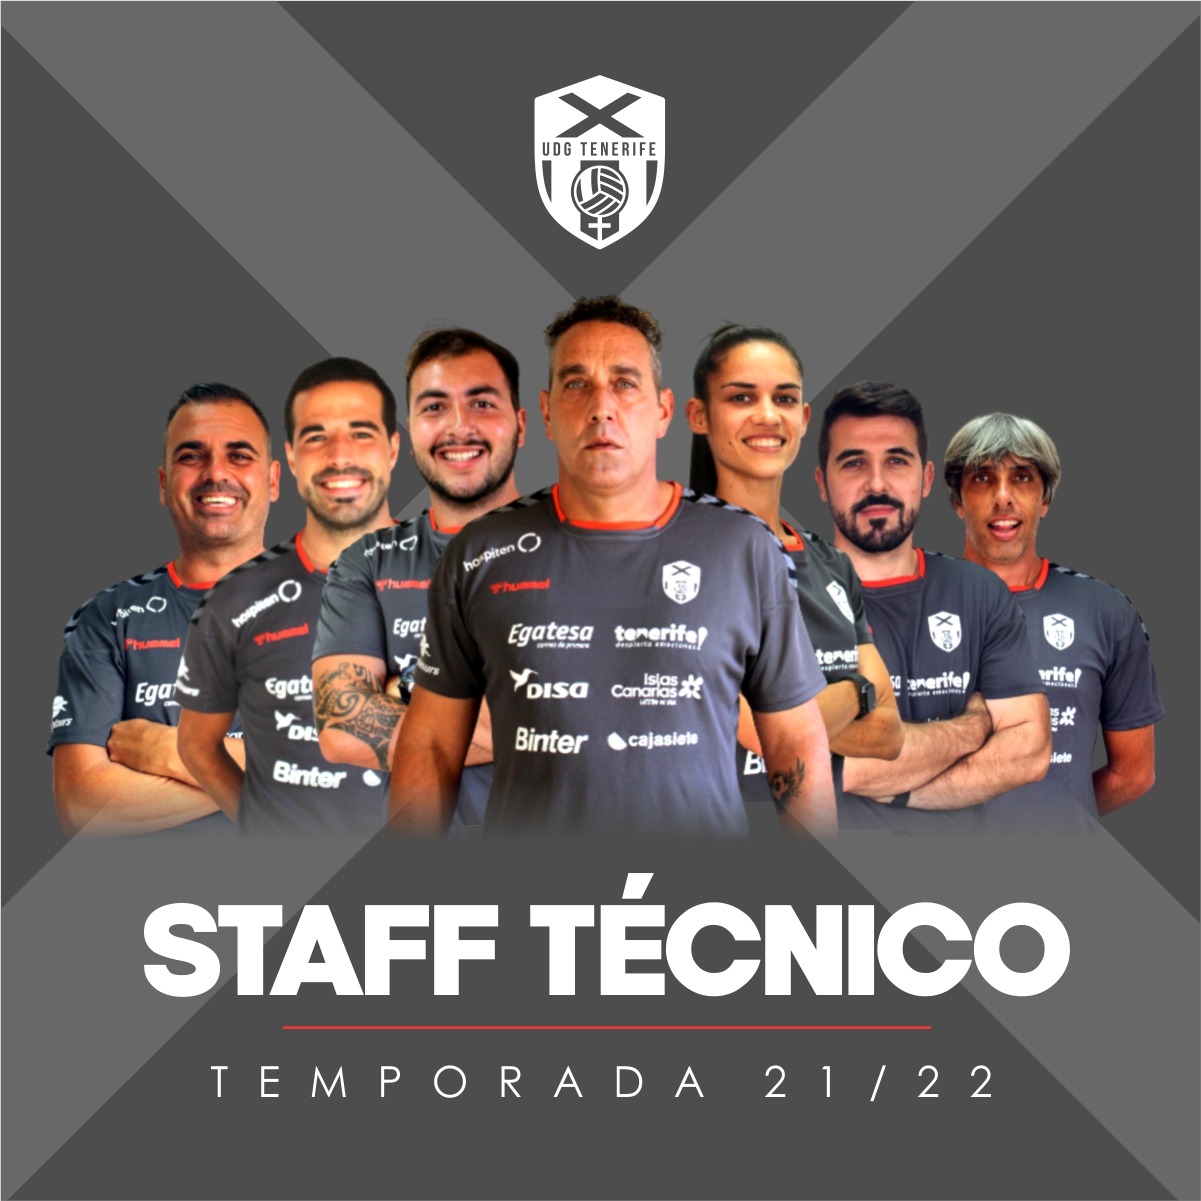 La UDG Tenerife presenta a su cuerpo técnico